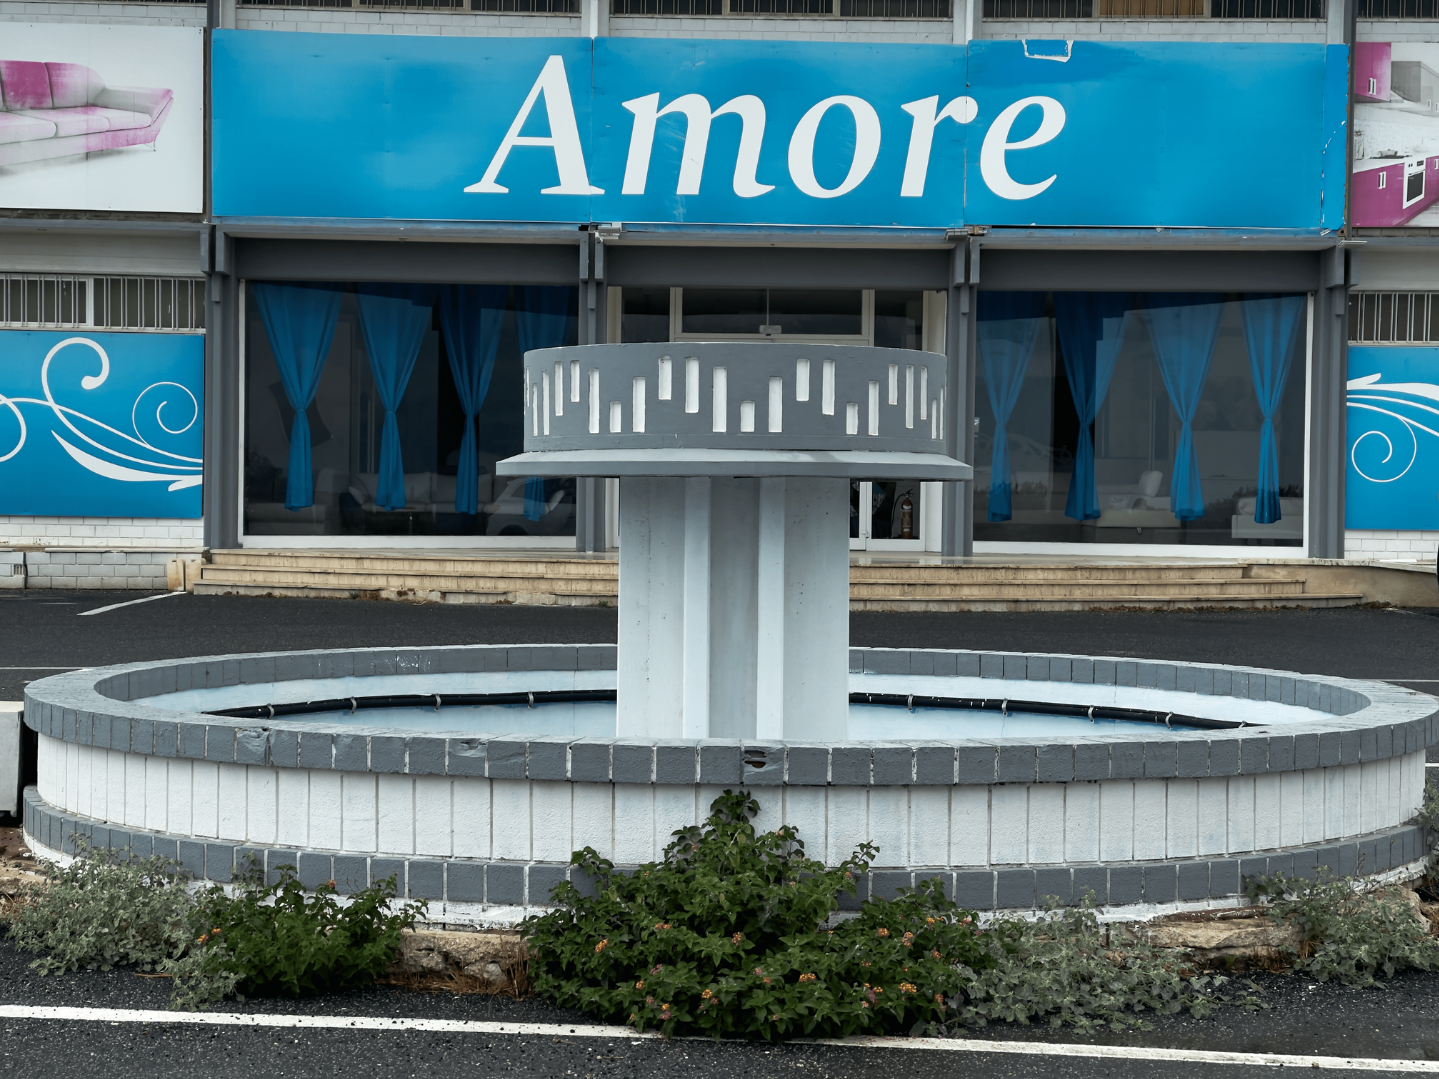 Ein Brunnen, der sich vor einem Laden mit einem großen Schild "Amore" befindet